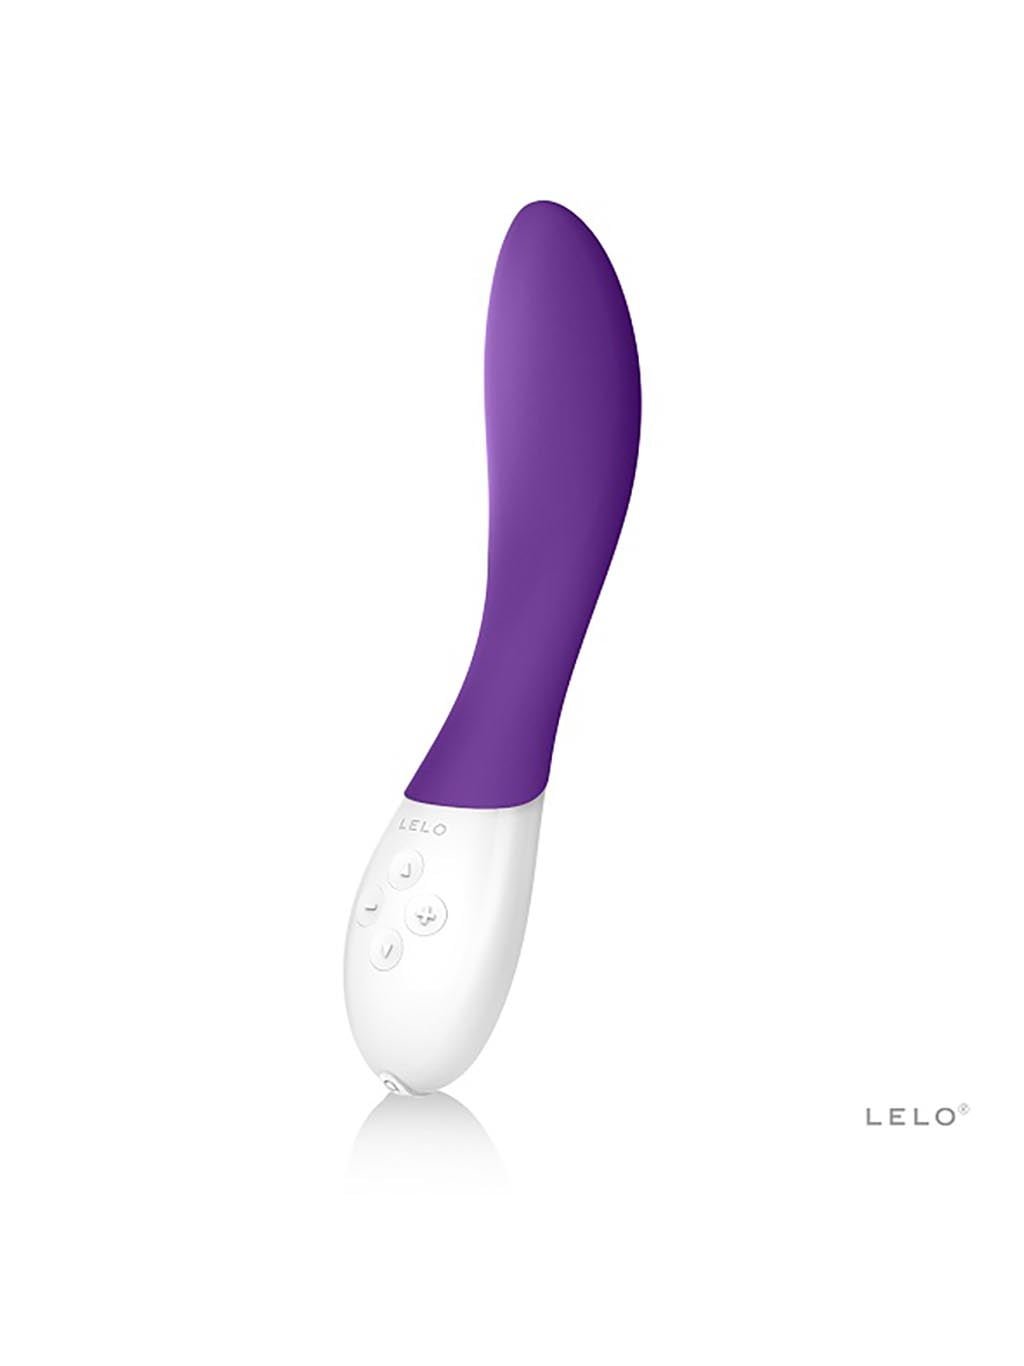 Lelo Mona 2 – Purple